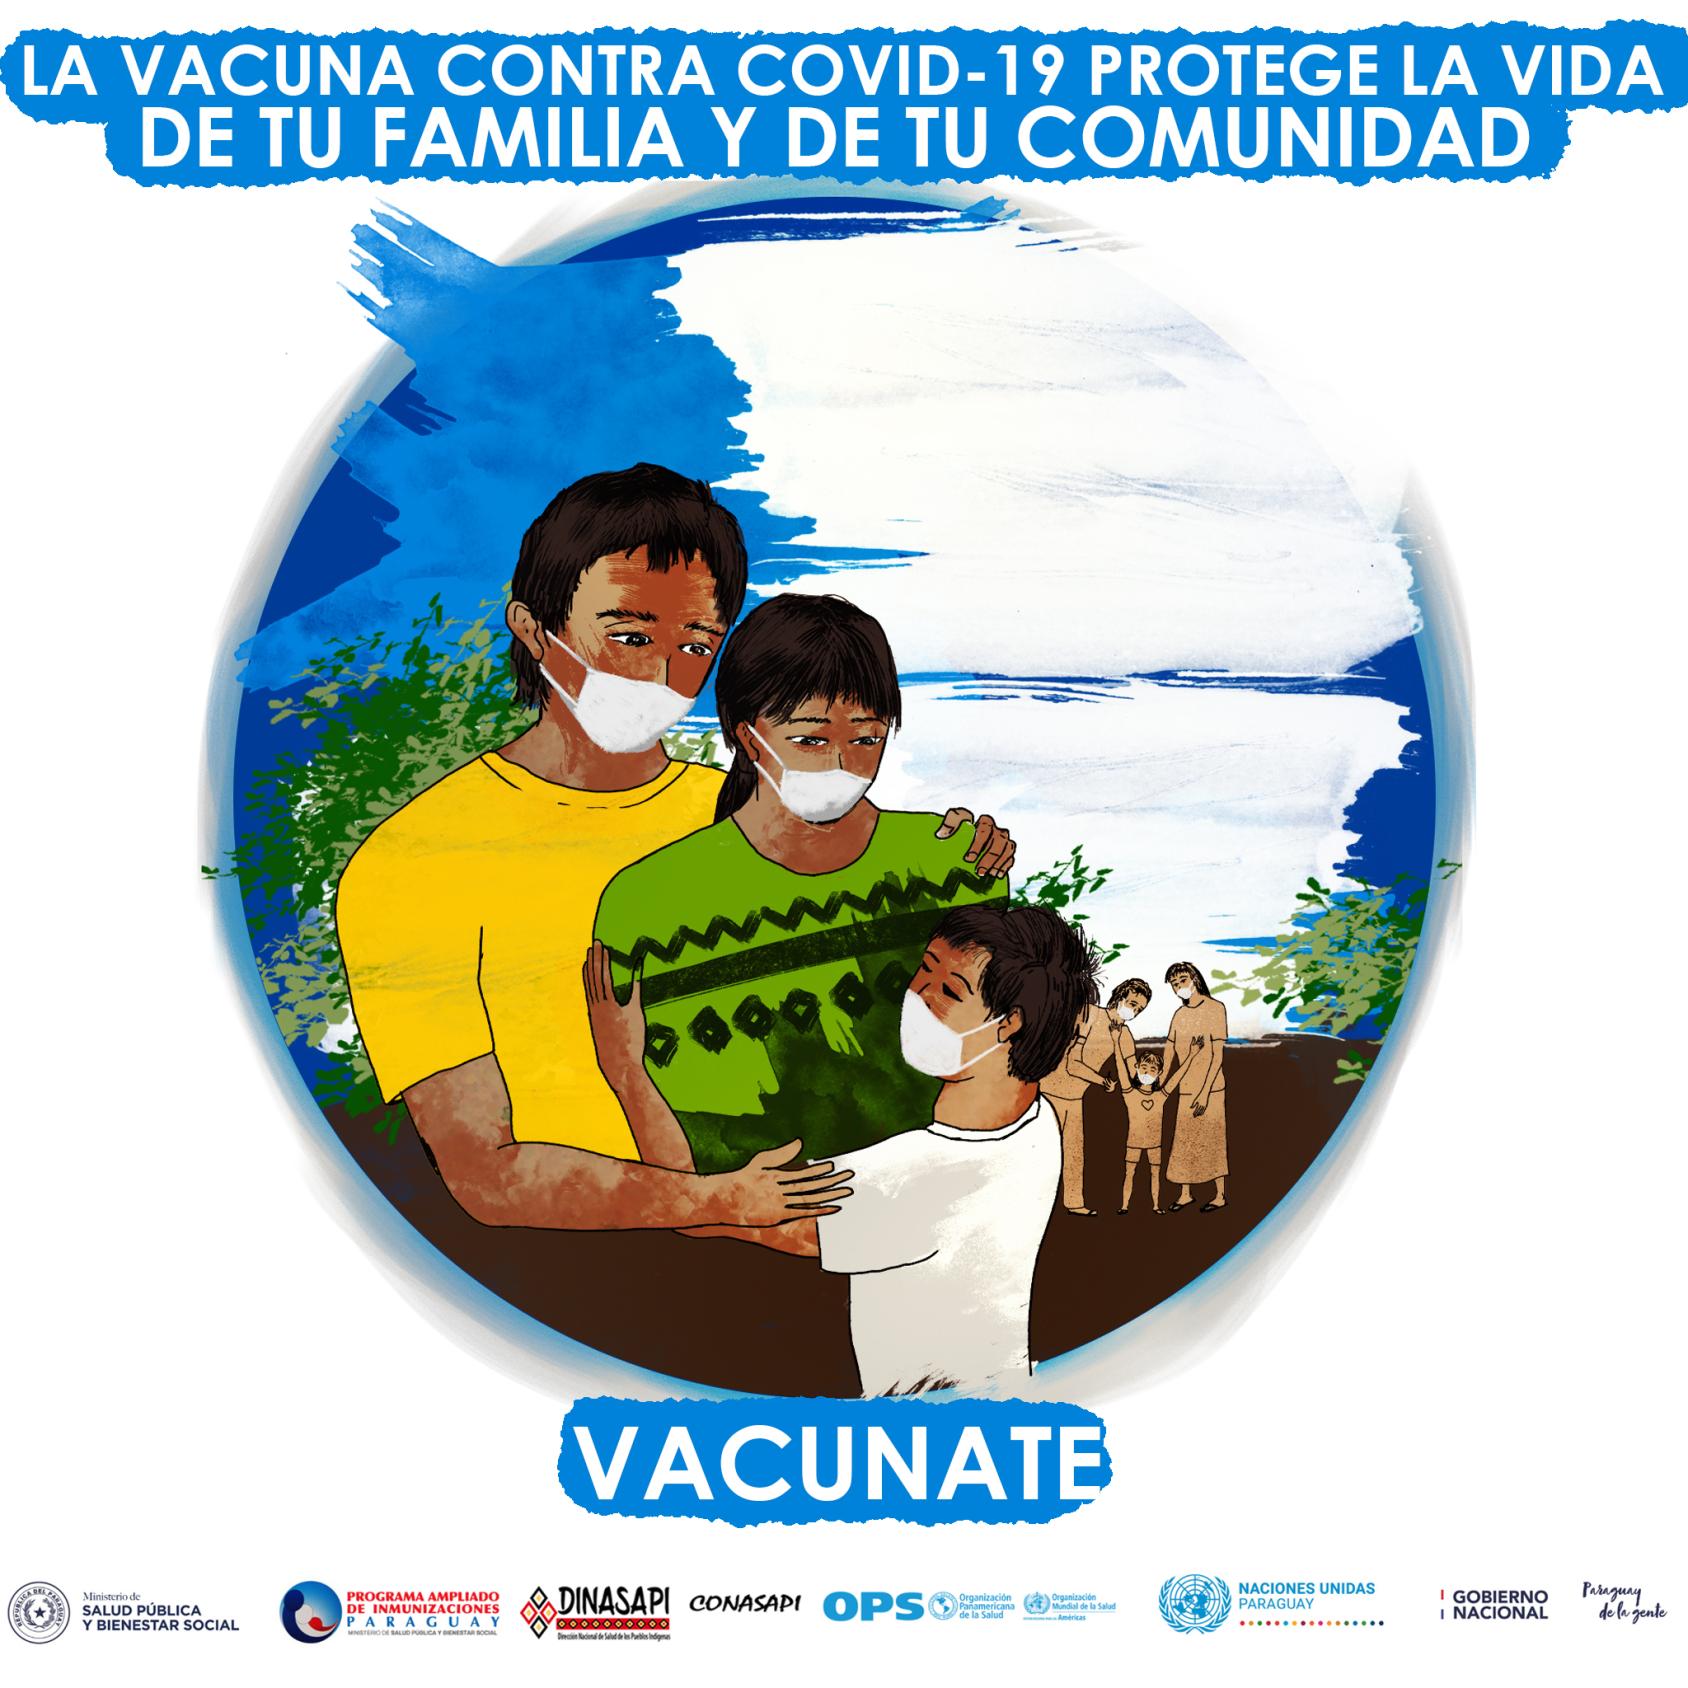 Una imagen de dibujos animando a las familias a vacunarse.